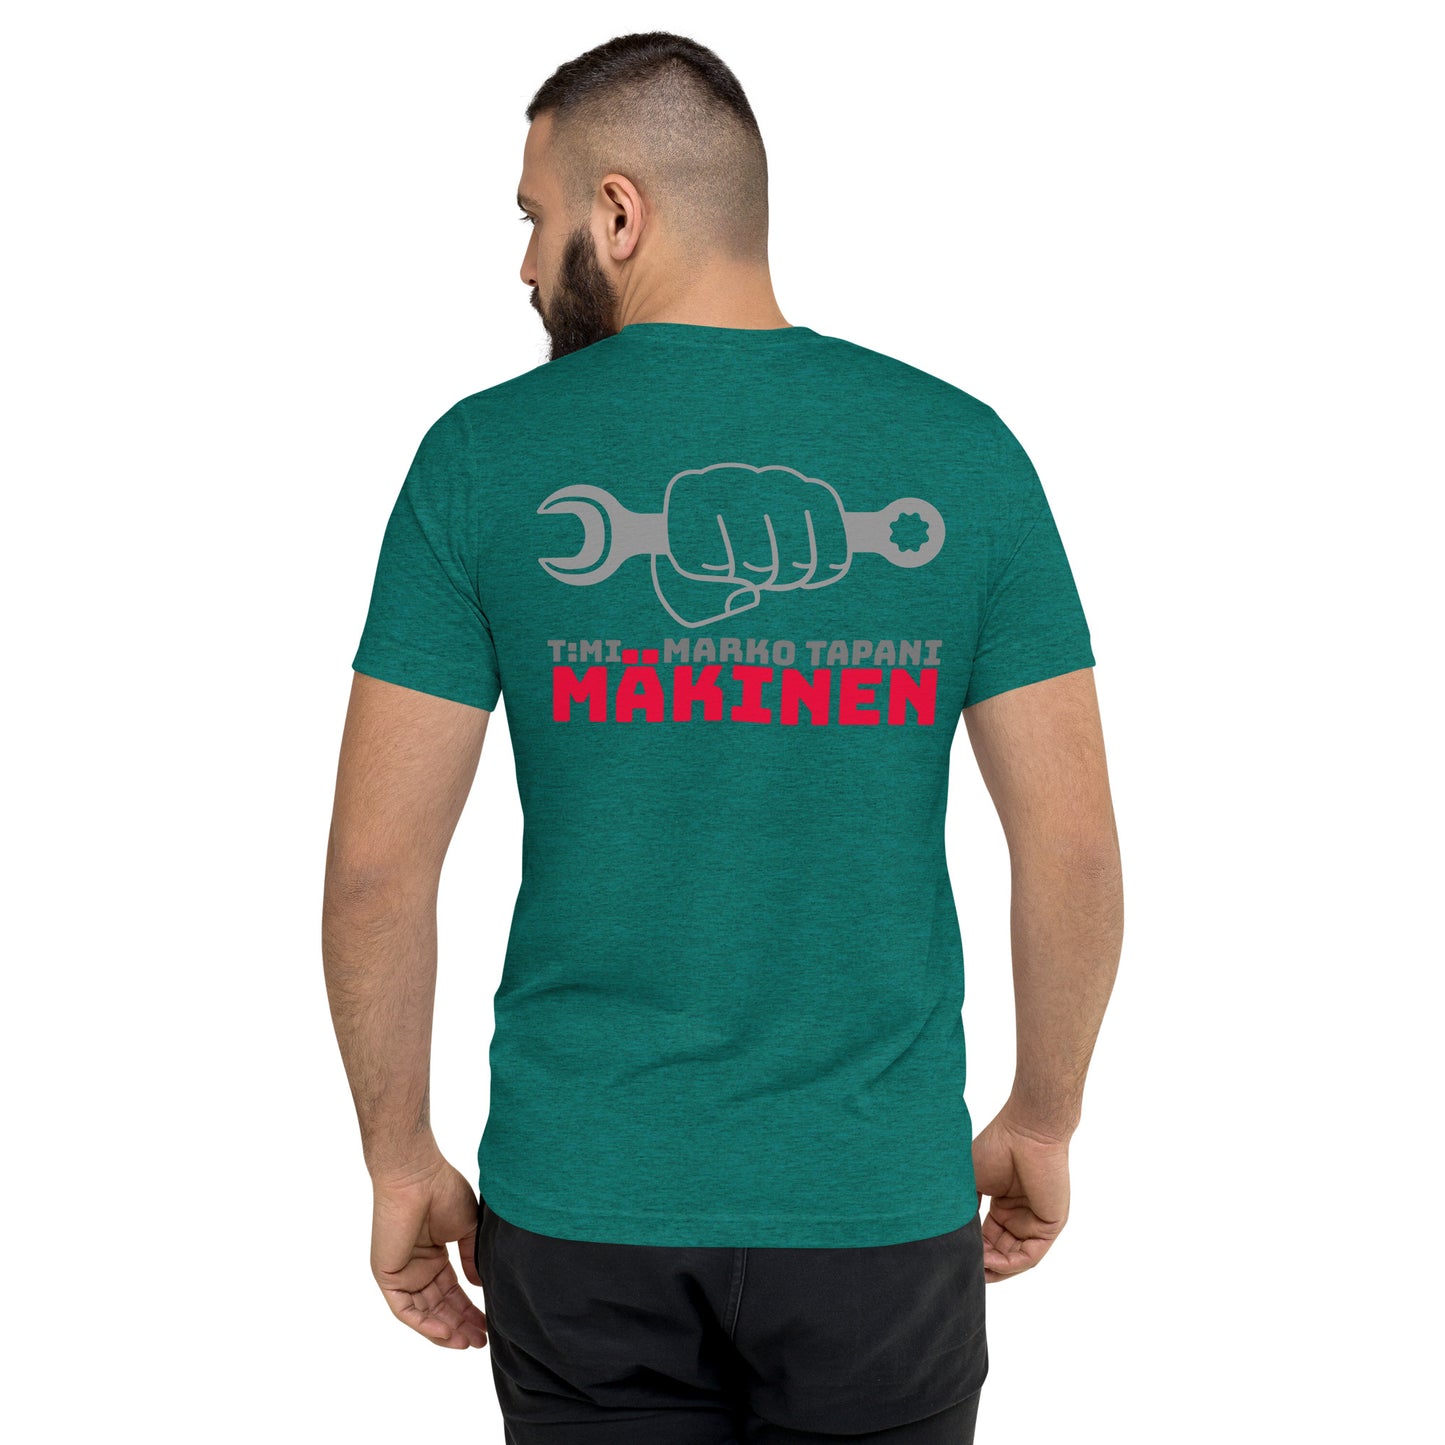 „T:mi Marko Tapani Mäkinen“-T-Shirt mit Bild auf der Rückseite